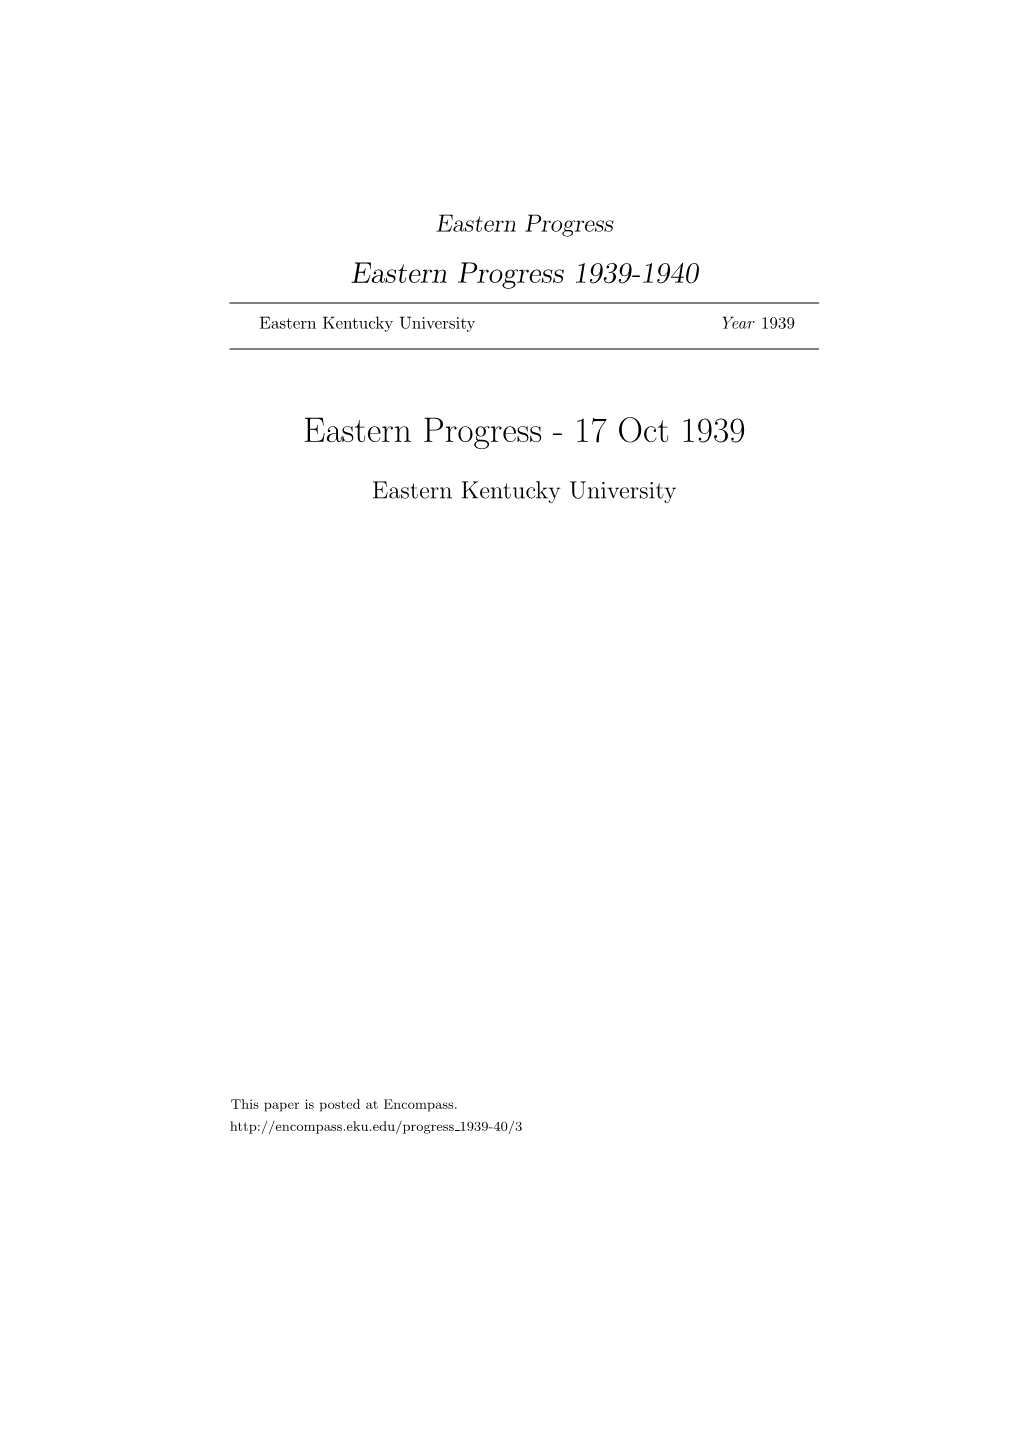 Eastern Progress Eastern Progress 1939-1940